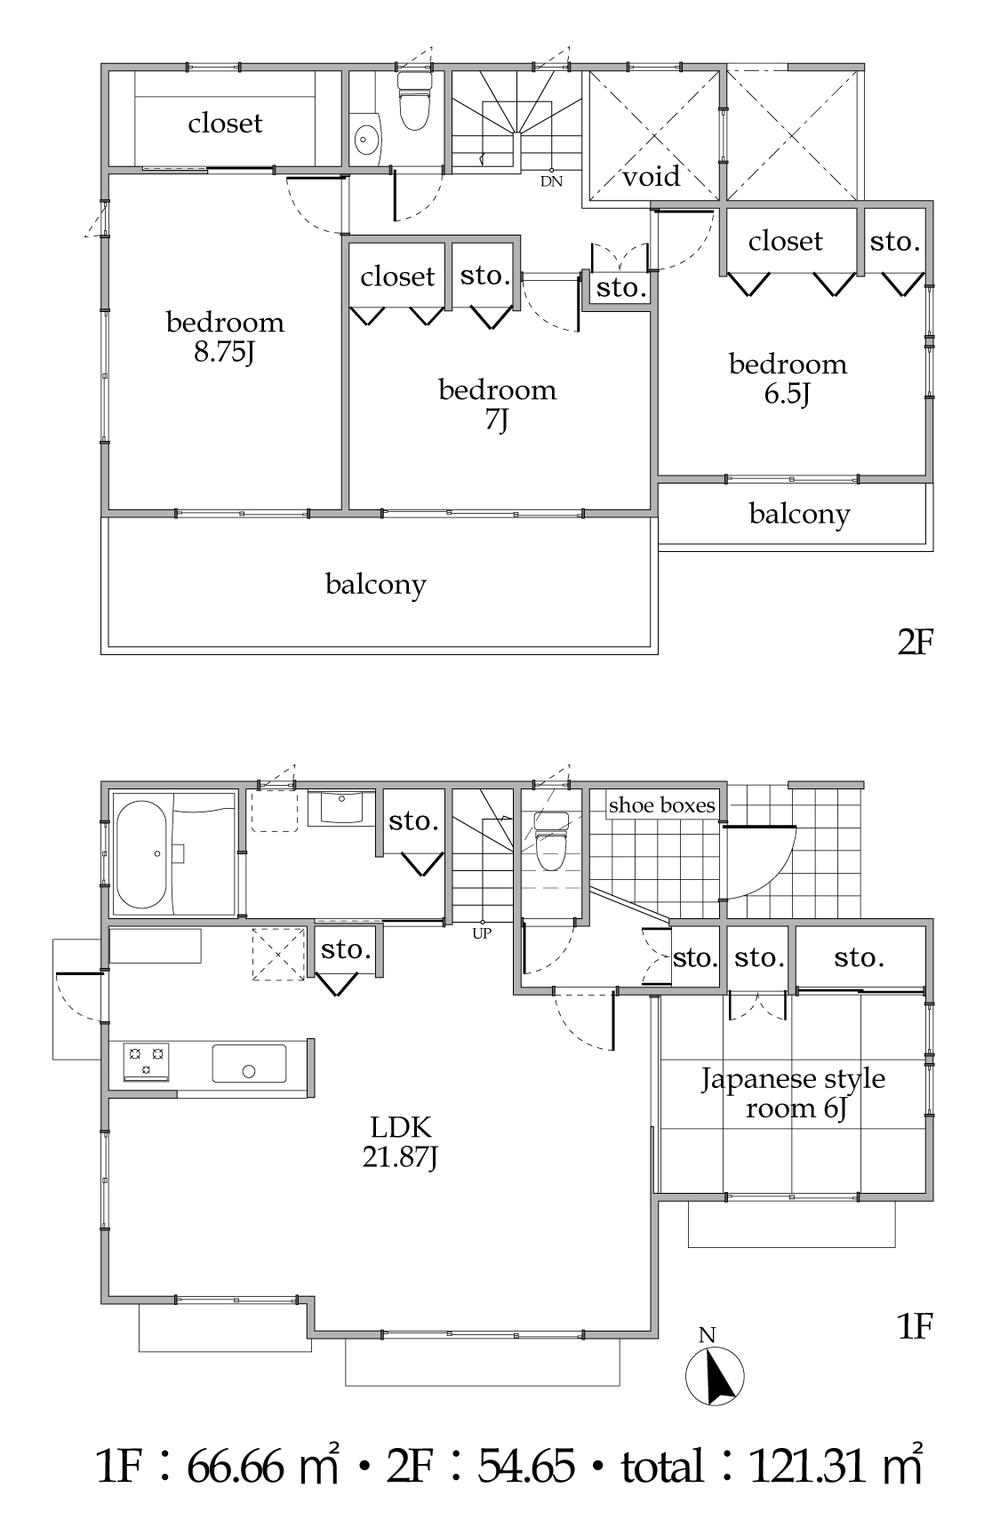 Building plan example (floor plan). Building plan example Building area 121.31 sq m